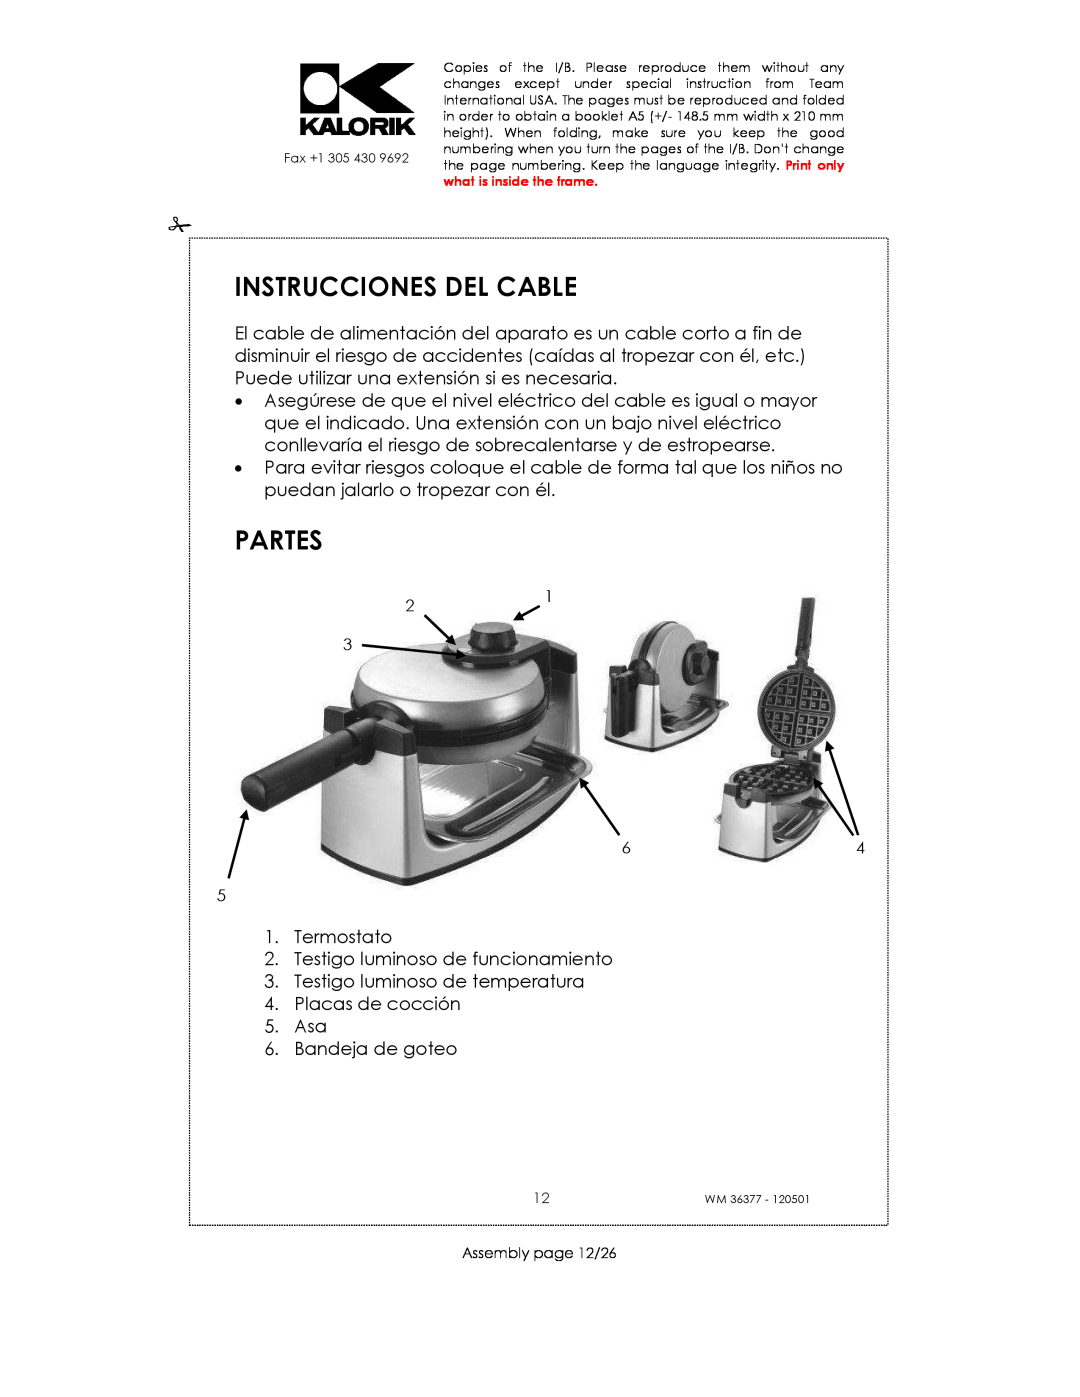 Kalorik WM 36377 manual Instrucciones Del Cable, Partes 